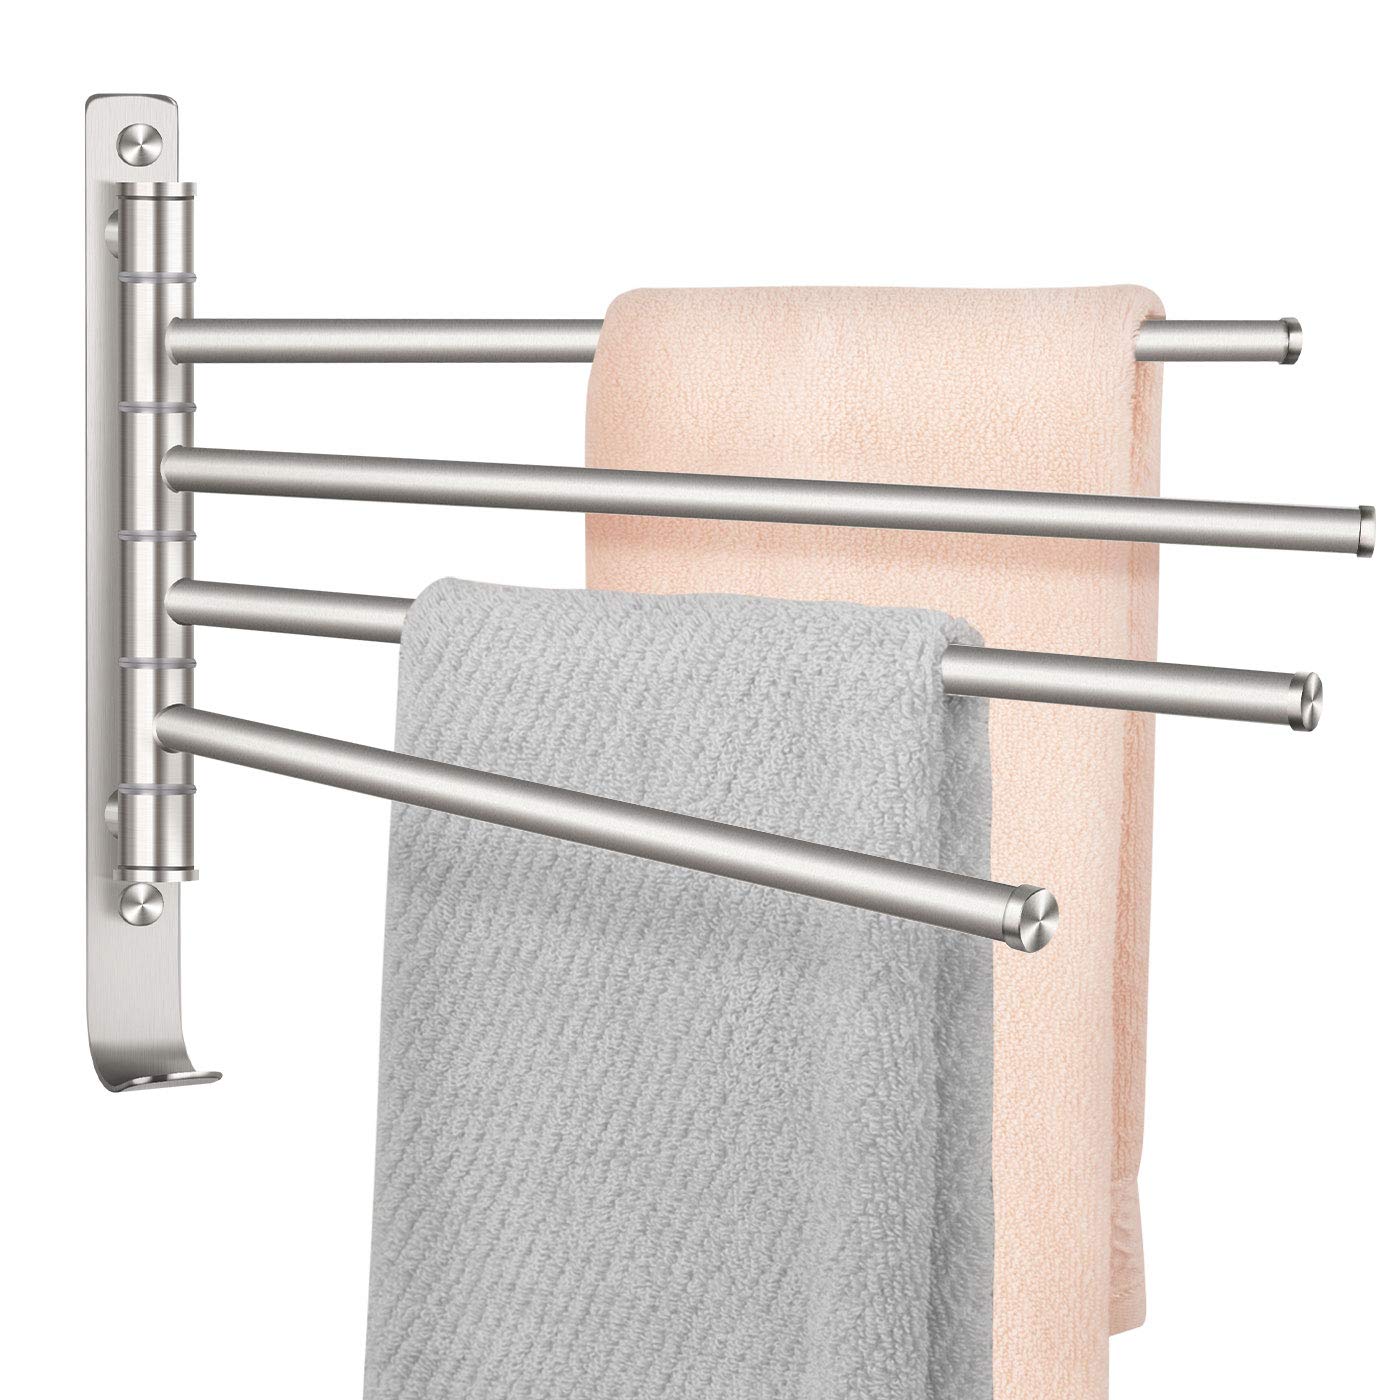 TONIAL Swivel Towel Bar 4-Arm Bathroom Towel Holder Wall-Mounted